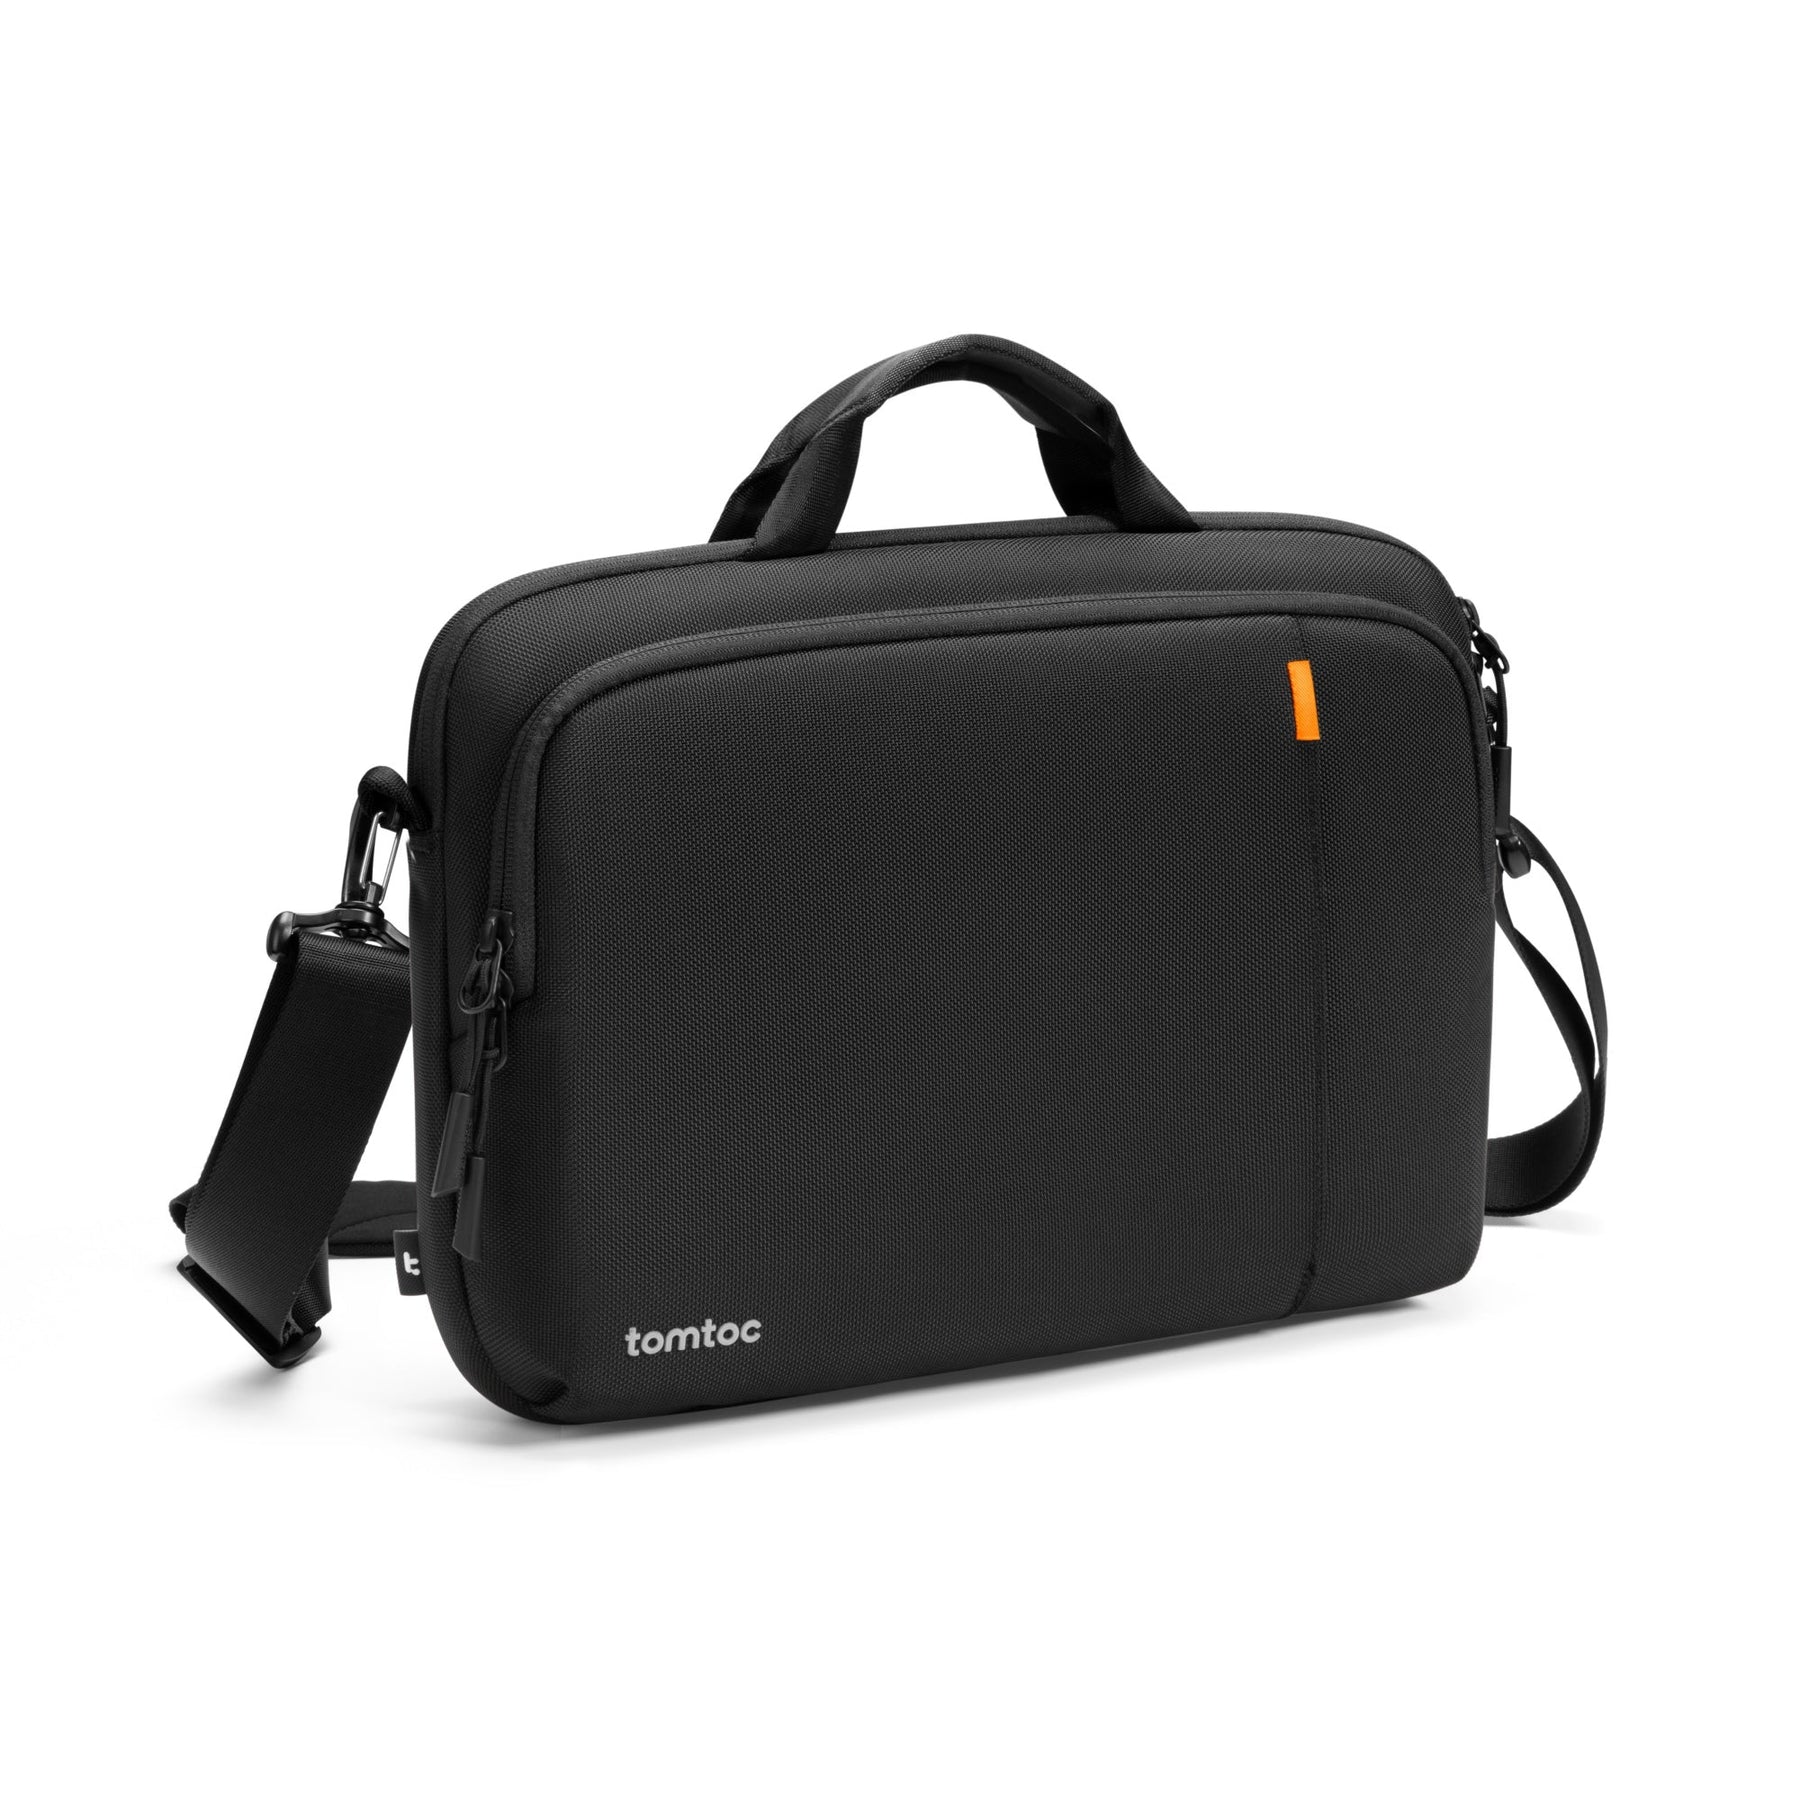 Defender-A30 Laptop Case with Shoulder Strap for 15.6-inch Laptop